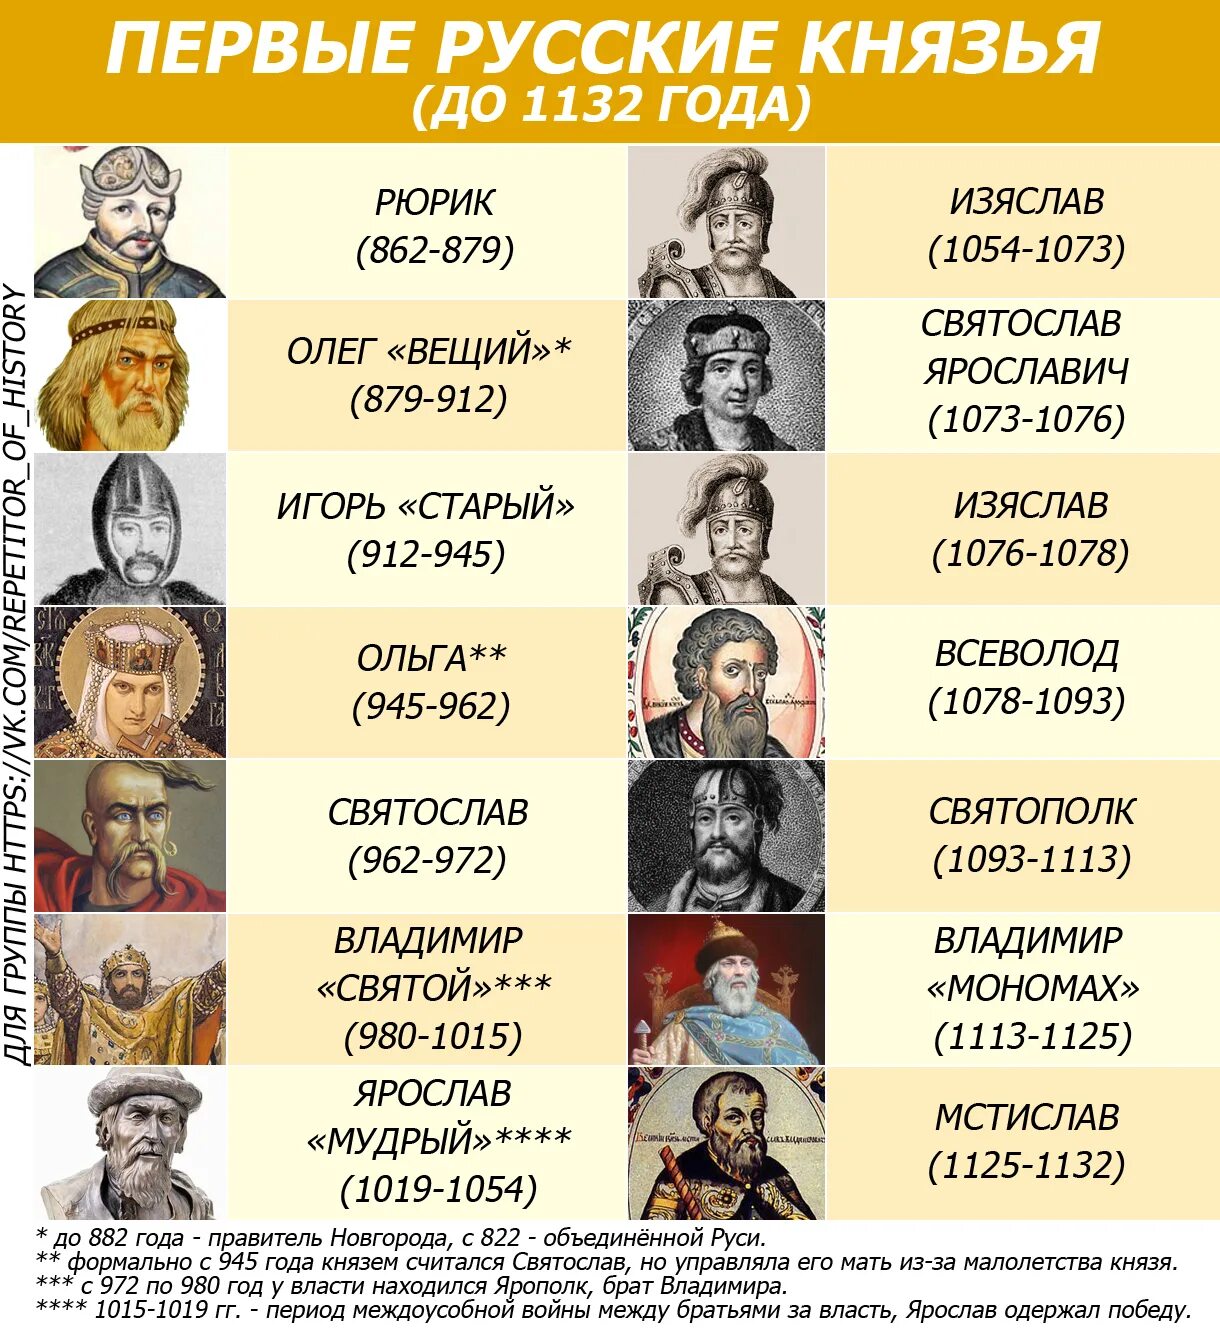 Великие князья владимирские таблица